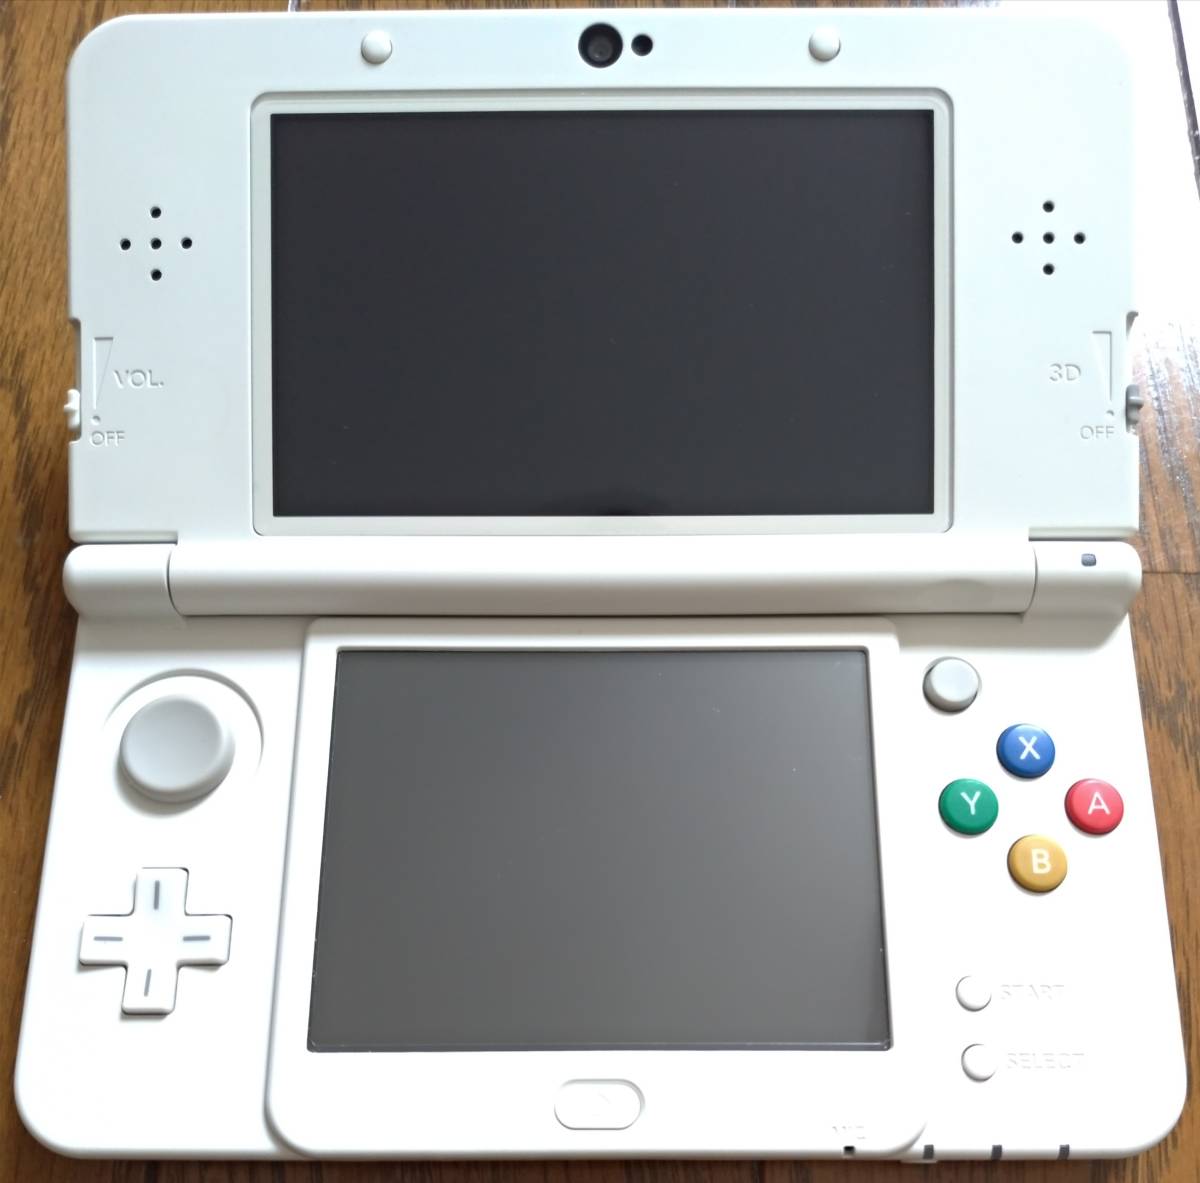 NEWニンテンドー3DS NEW NINTENDO 3DS ホワイト 中古美品 全体綺麗 上下画面傷なし 不具合なし 充電器 タッチペン SDカード4GB 送料無料